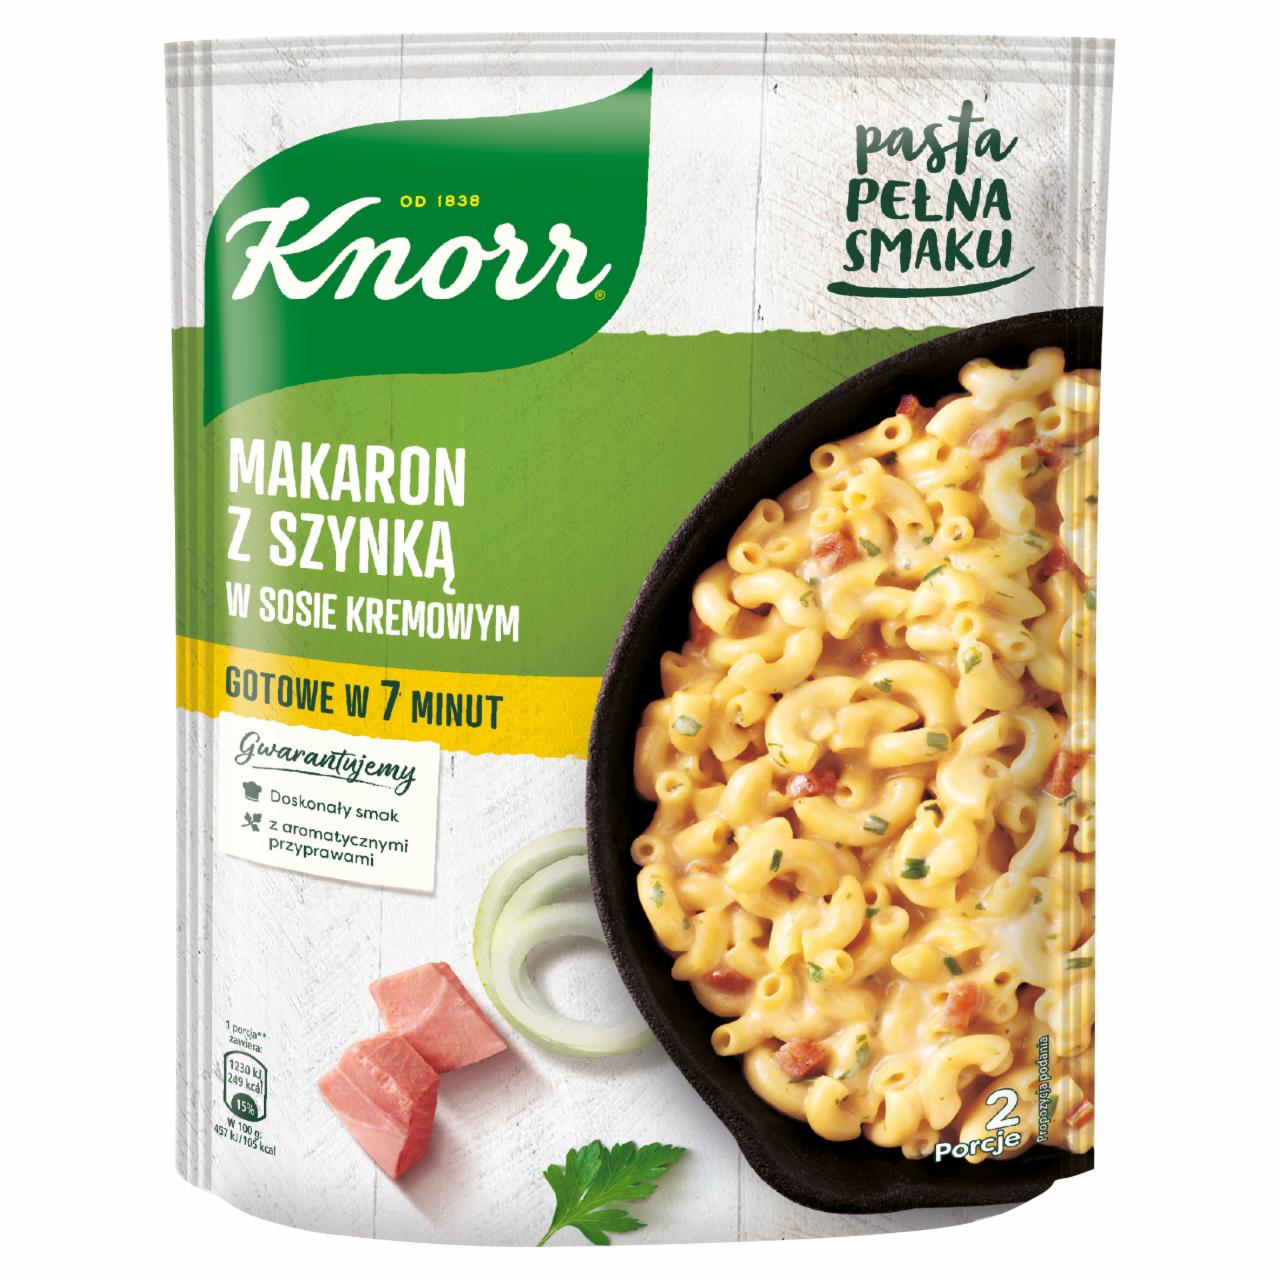 Zdjęcia - Knorr Makaron z szynką w sosie kremowym 156 g